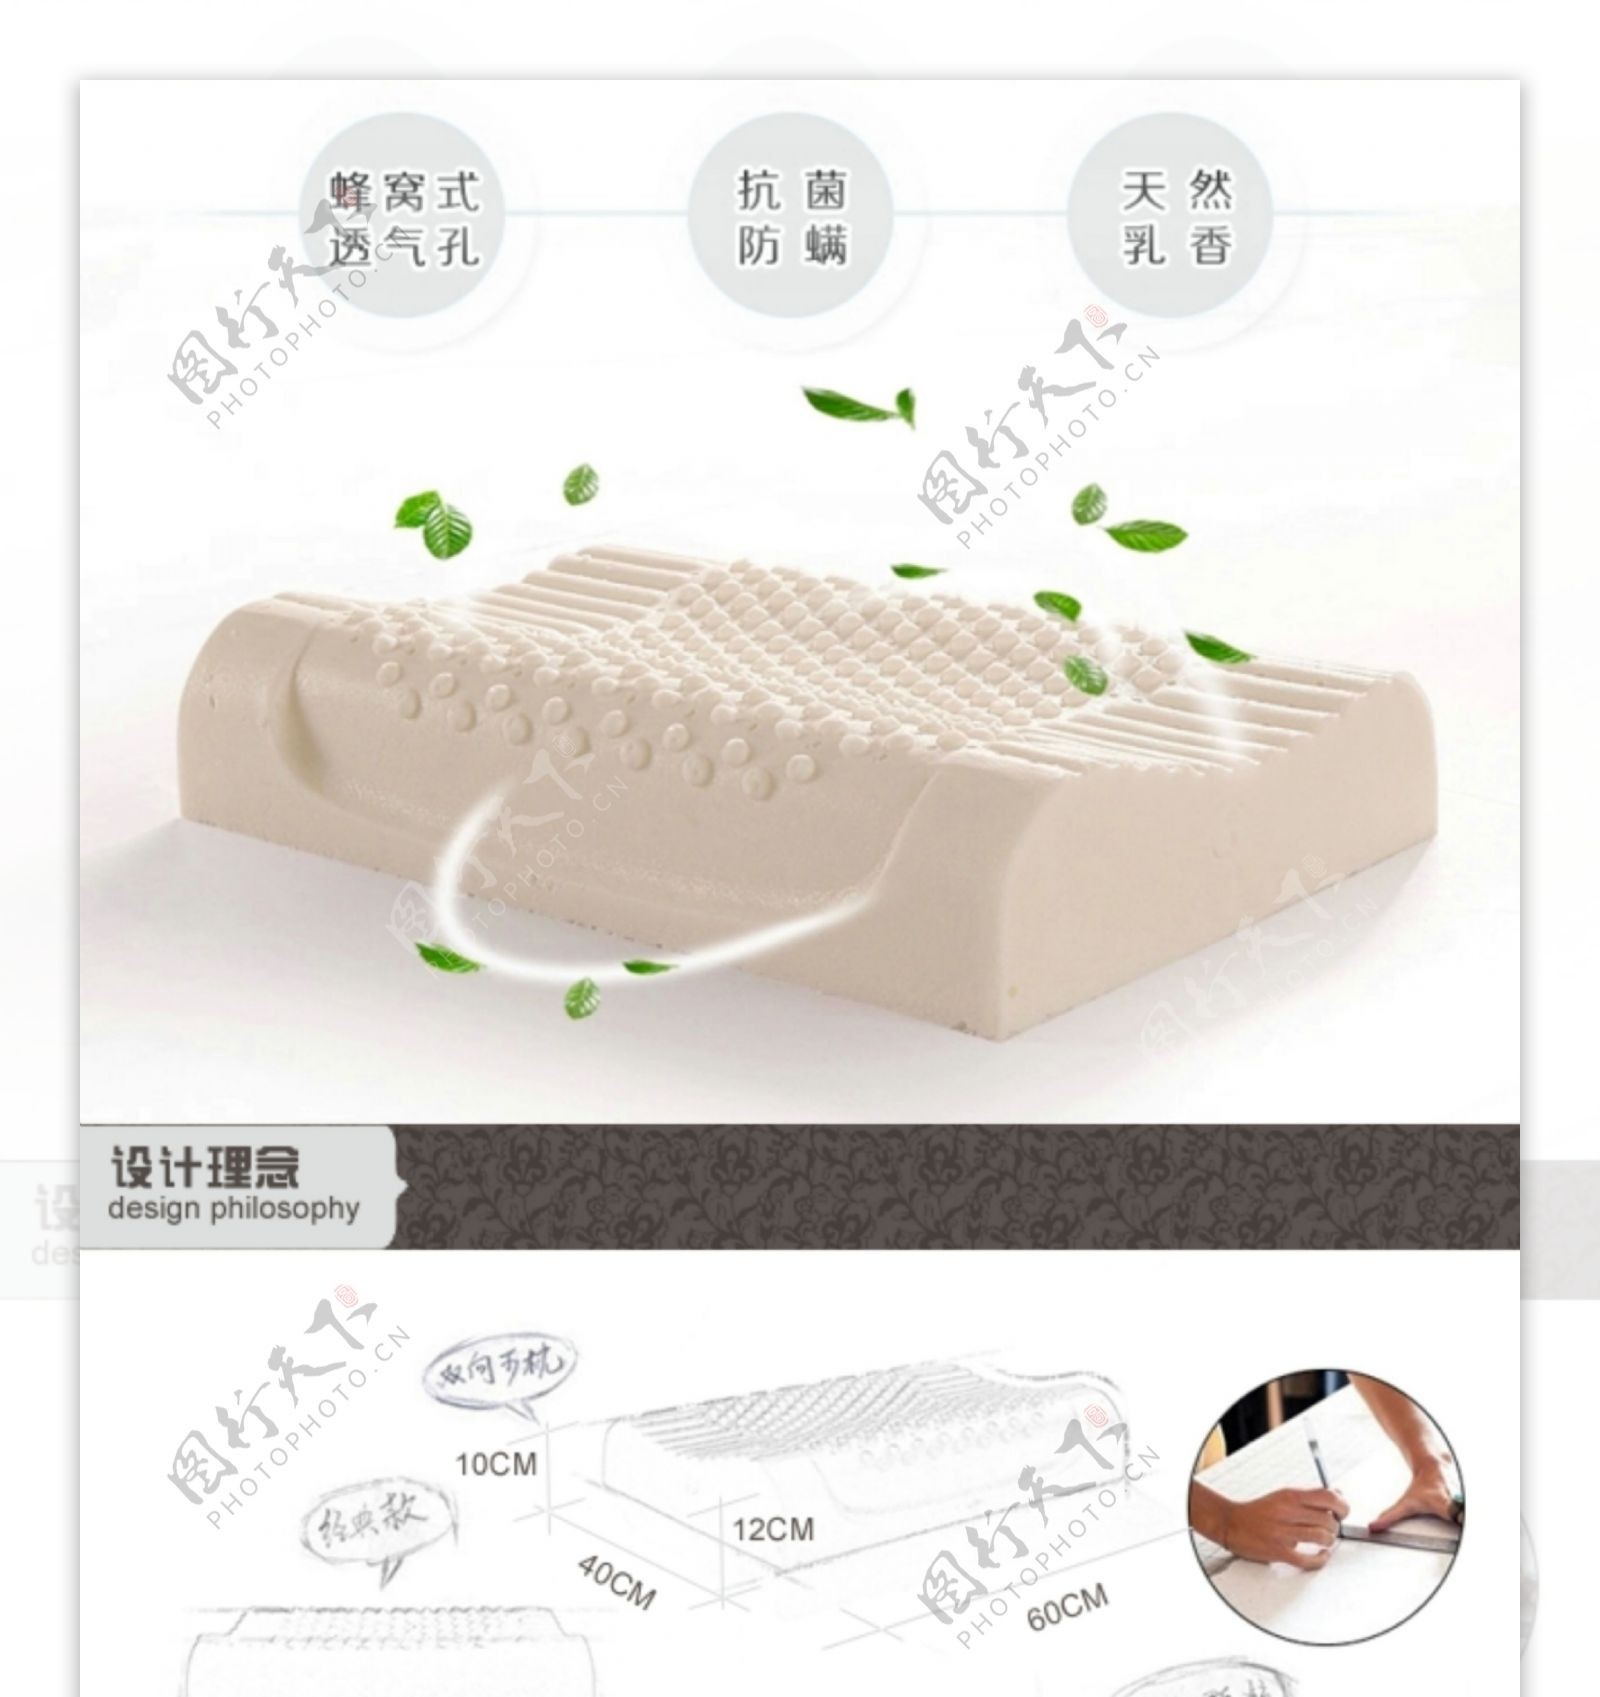 天然乳胶枕头产品详情页设计